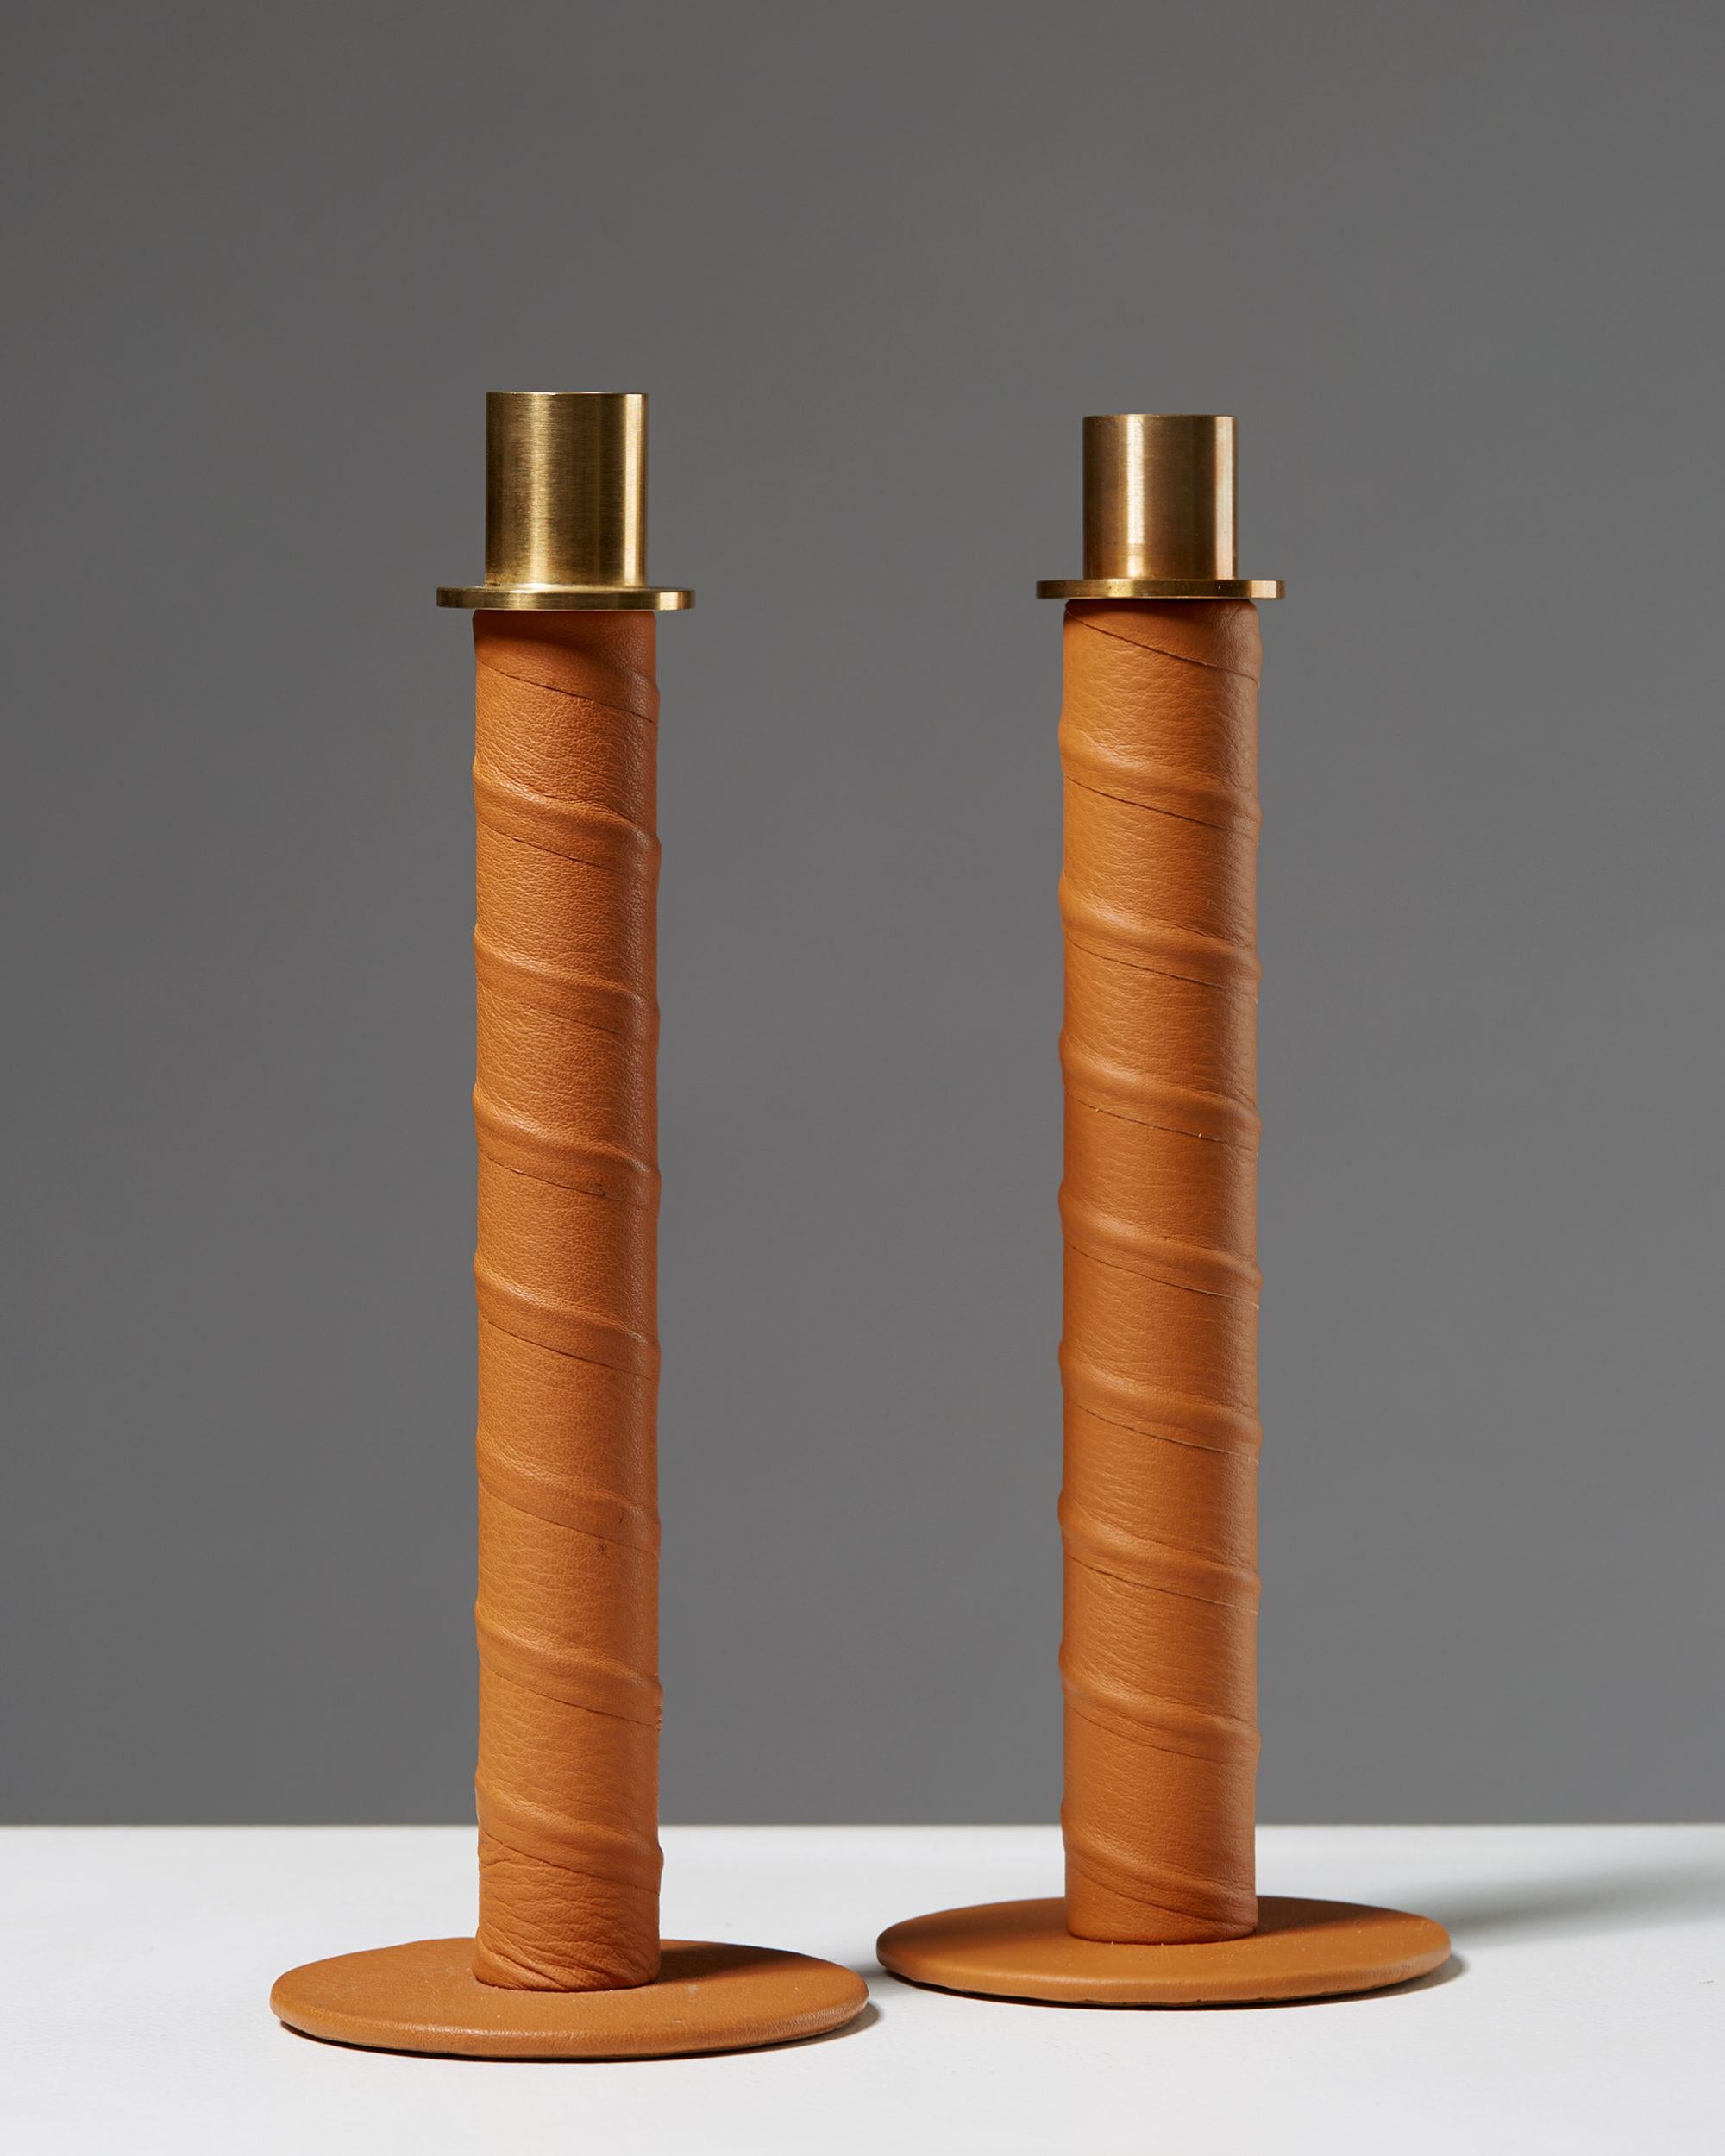 Set of candlesticks “Herrgård” designed by Alexander Lervik, Sweden, 2013.
Steel, leather and brass.

Measures: H 19 cm/ 7 3/8